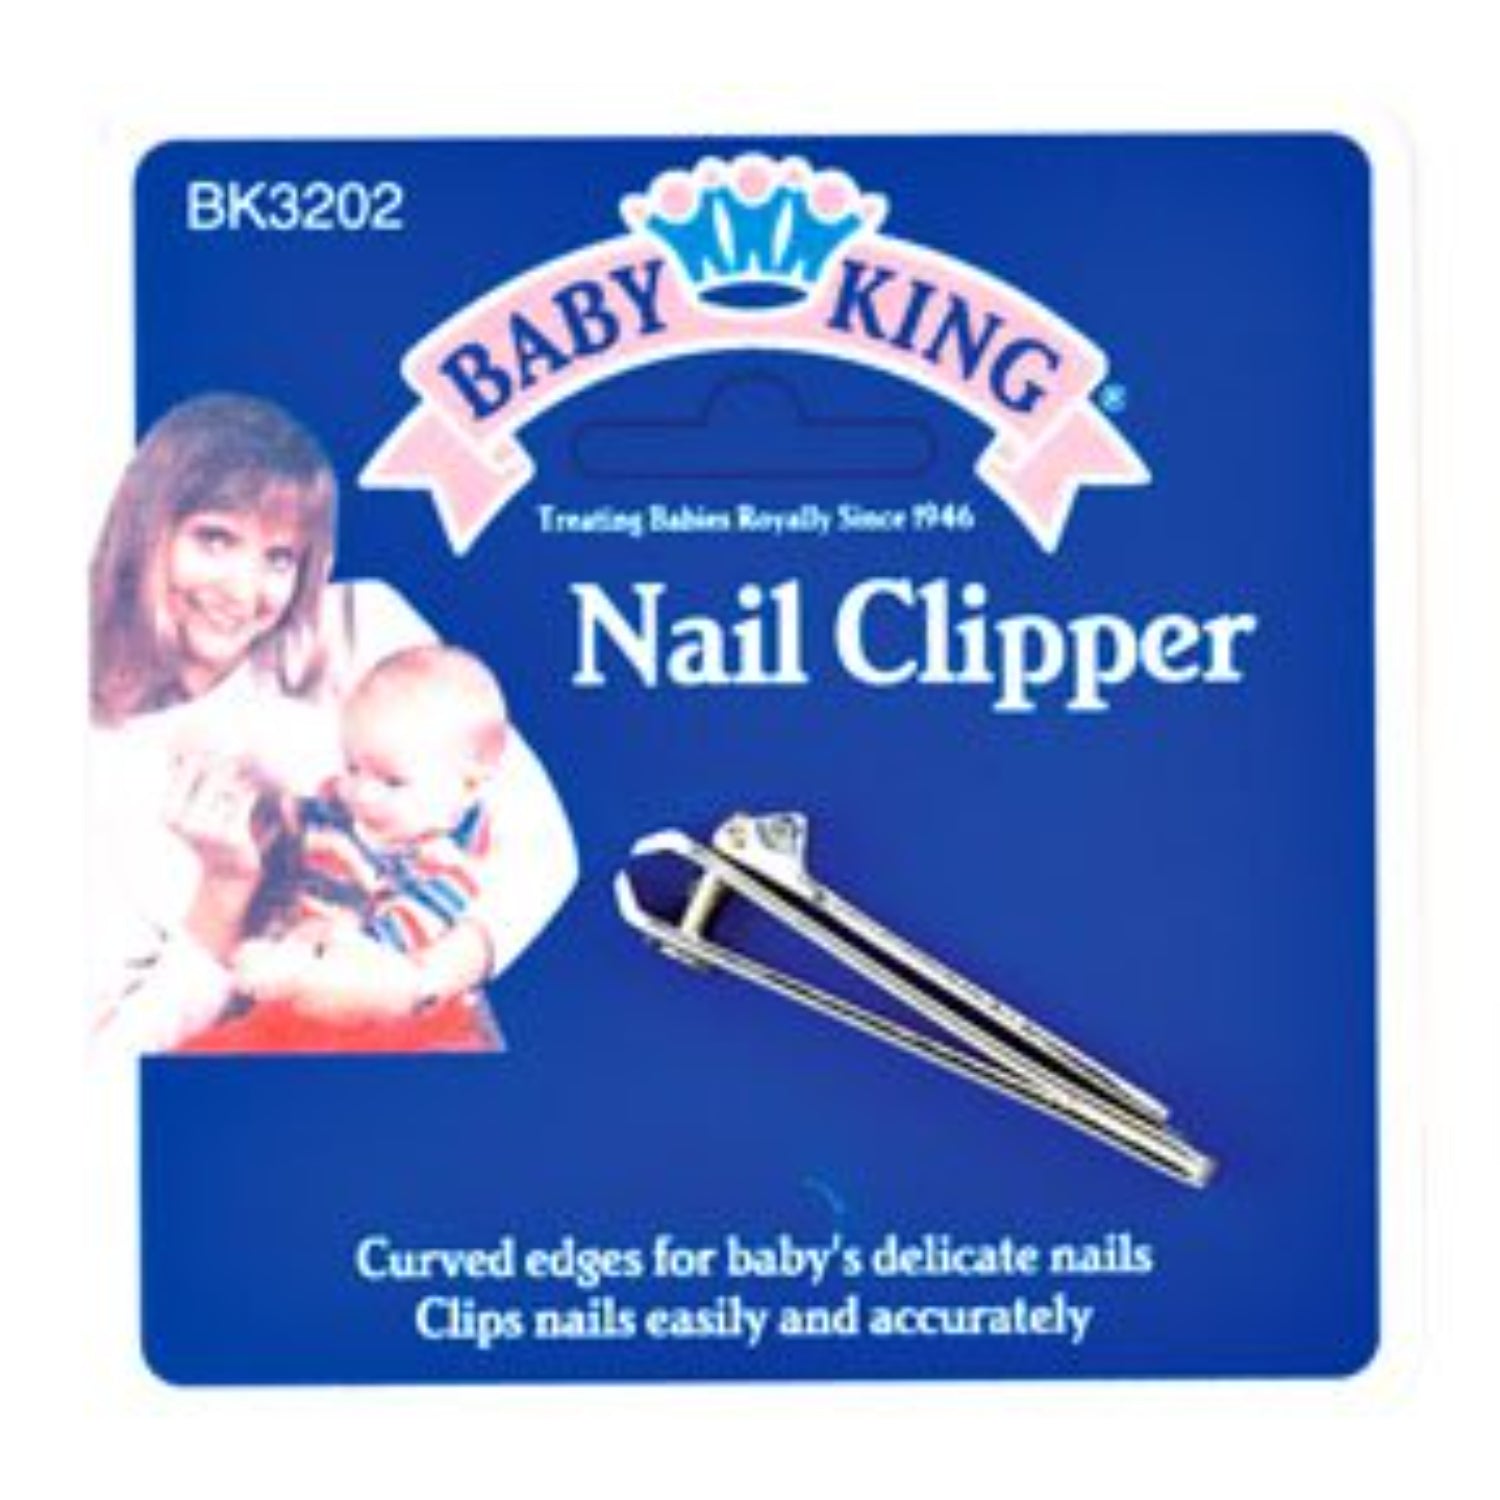 Baby King Nail Clipper